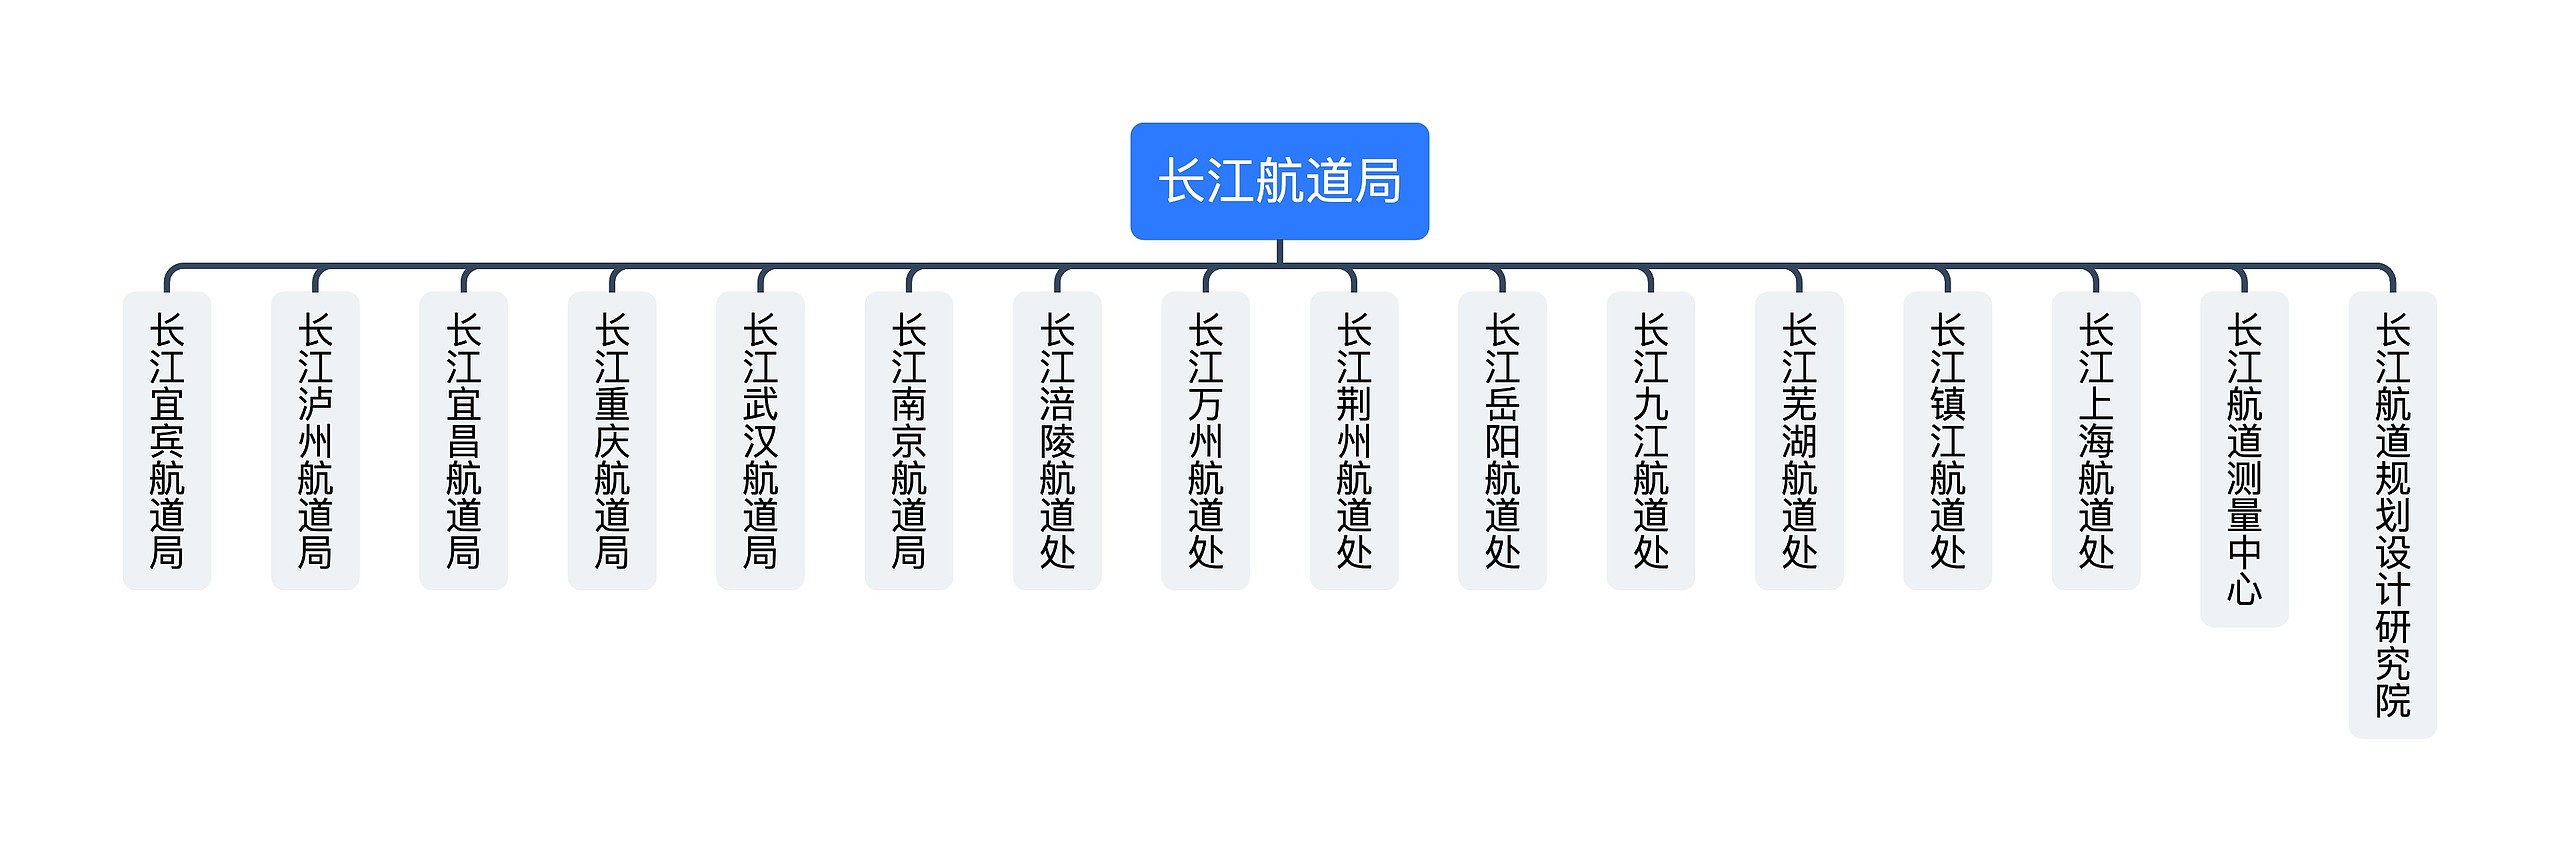 ﻿长江航道局组织架构图思维导图